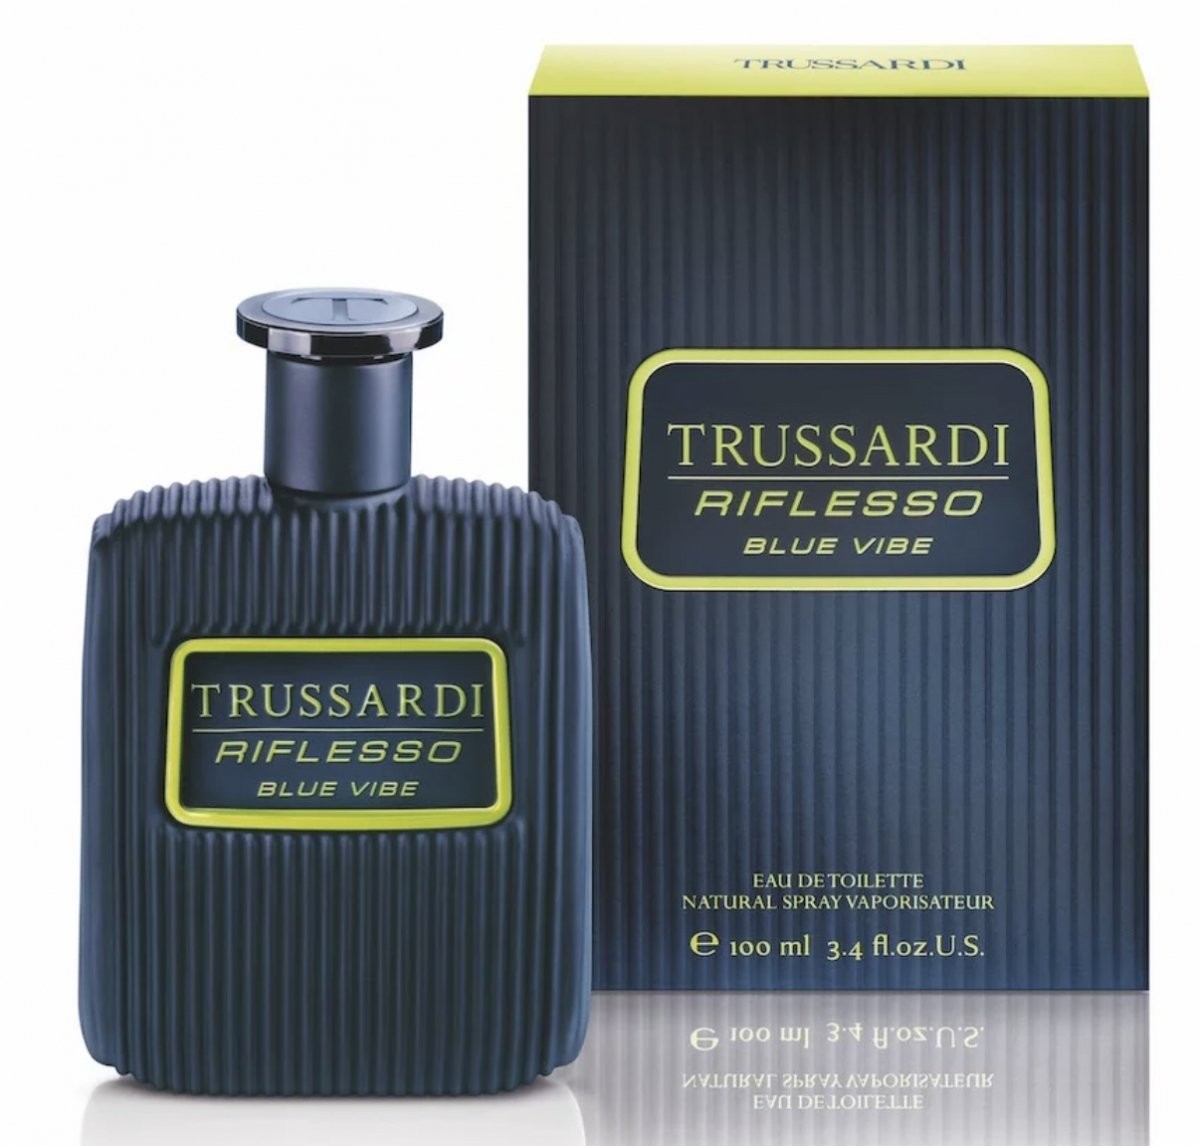 Изображение парфюма Trussardi Riflesso Blue Vibe